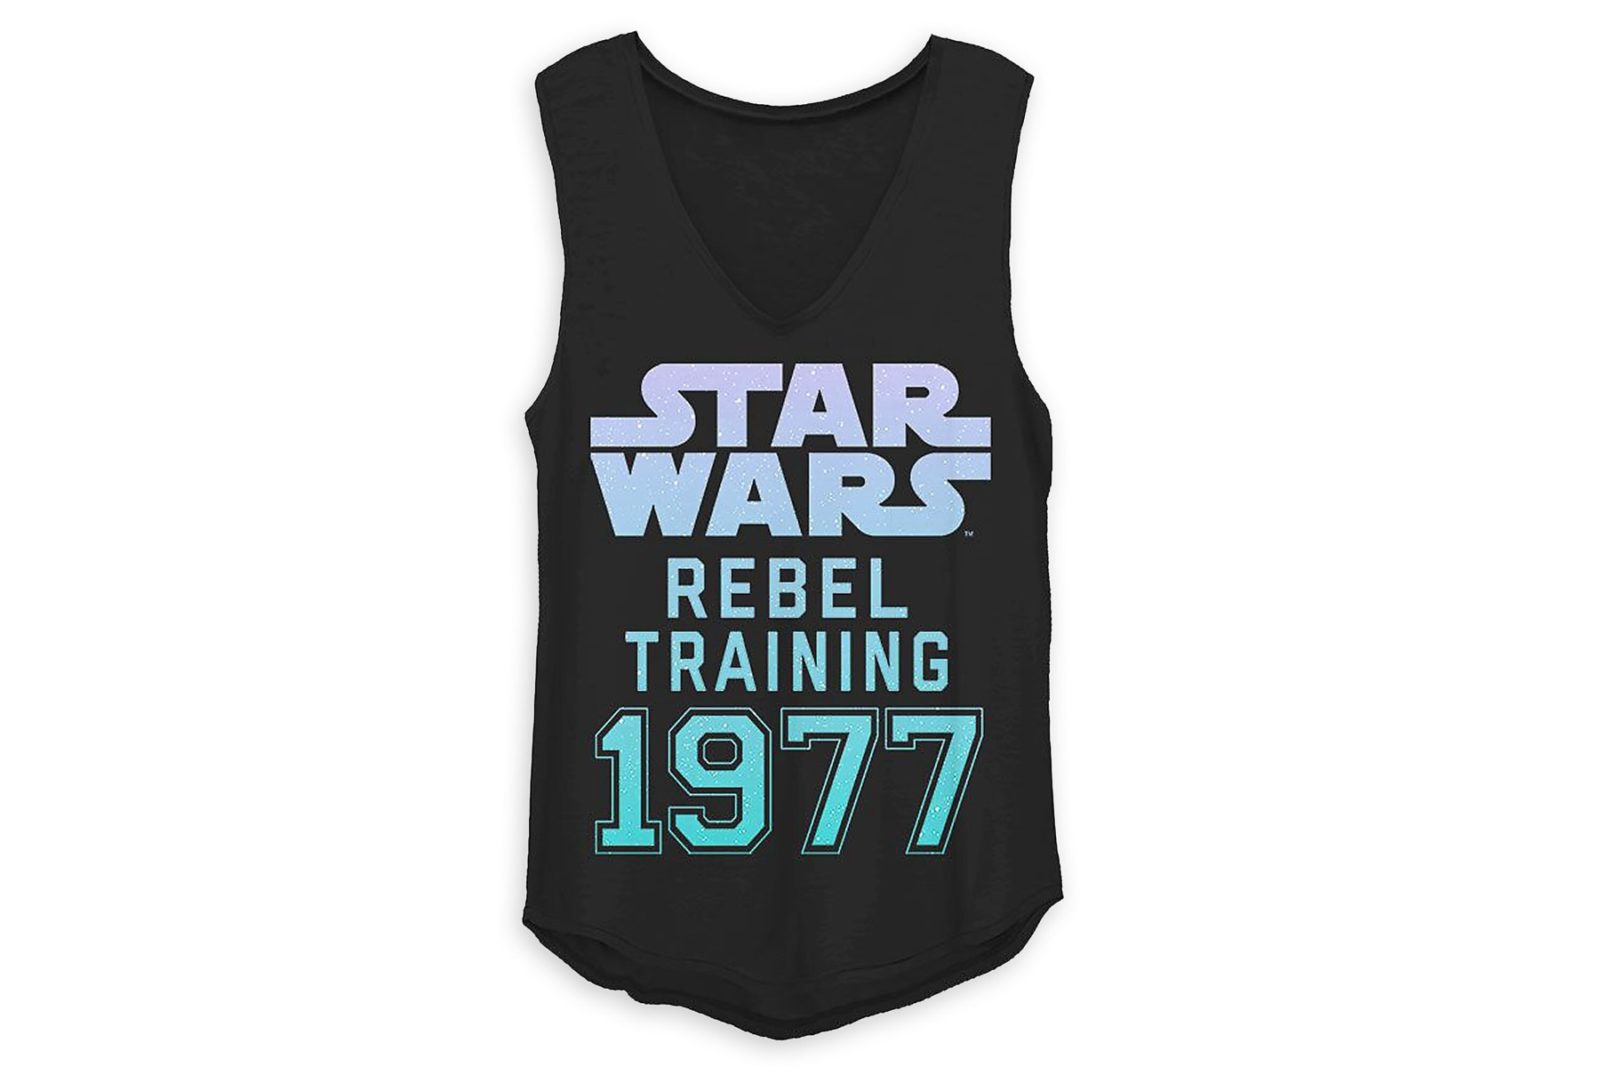 Women's Star Wars Rebel Training Tank Top at Shop Disney